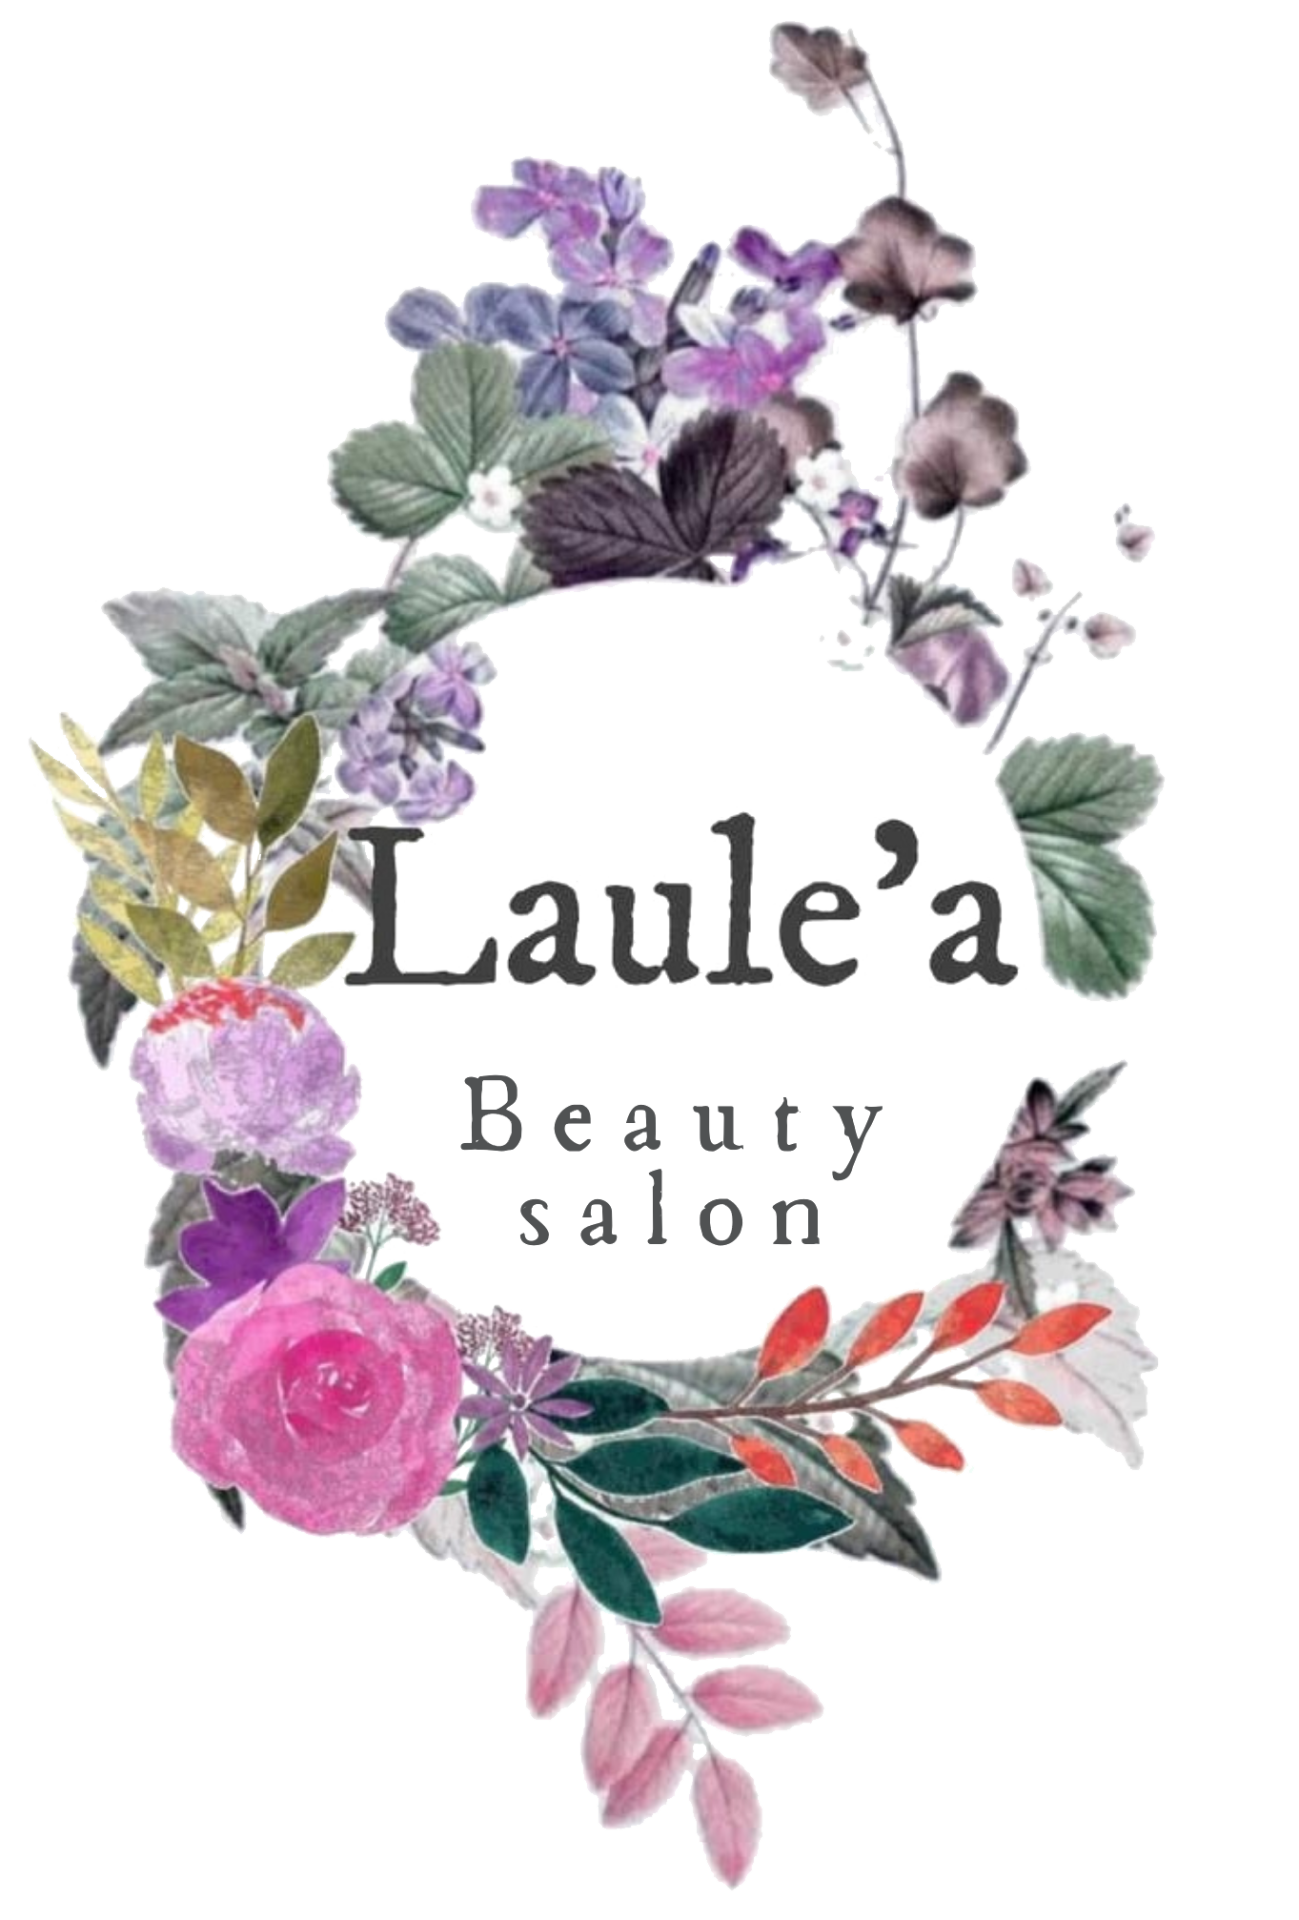 Beauty salon Laule’a